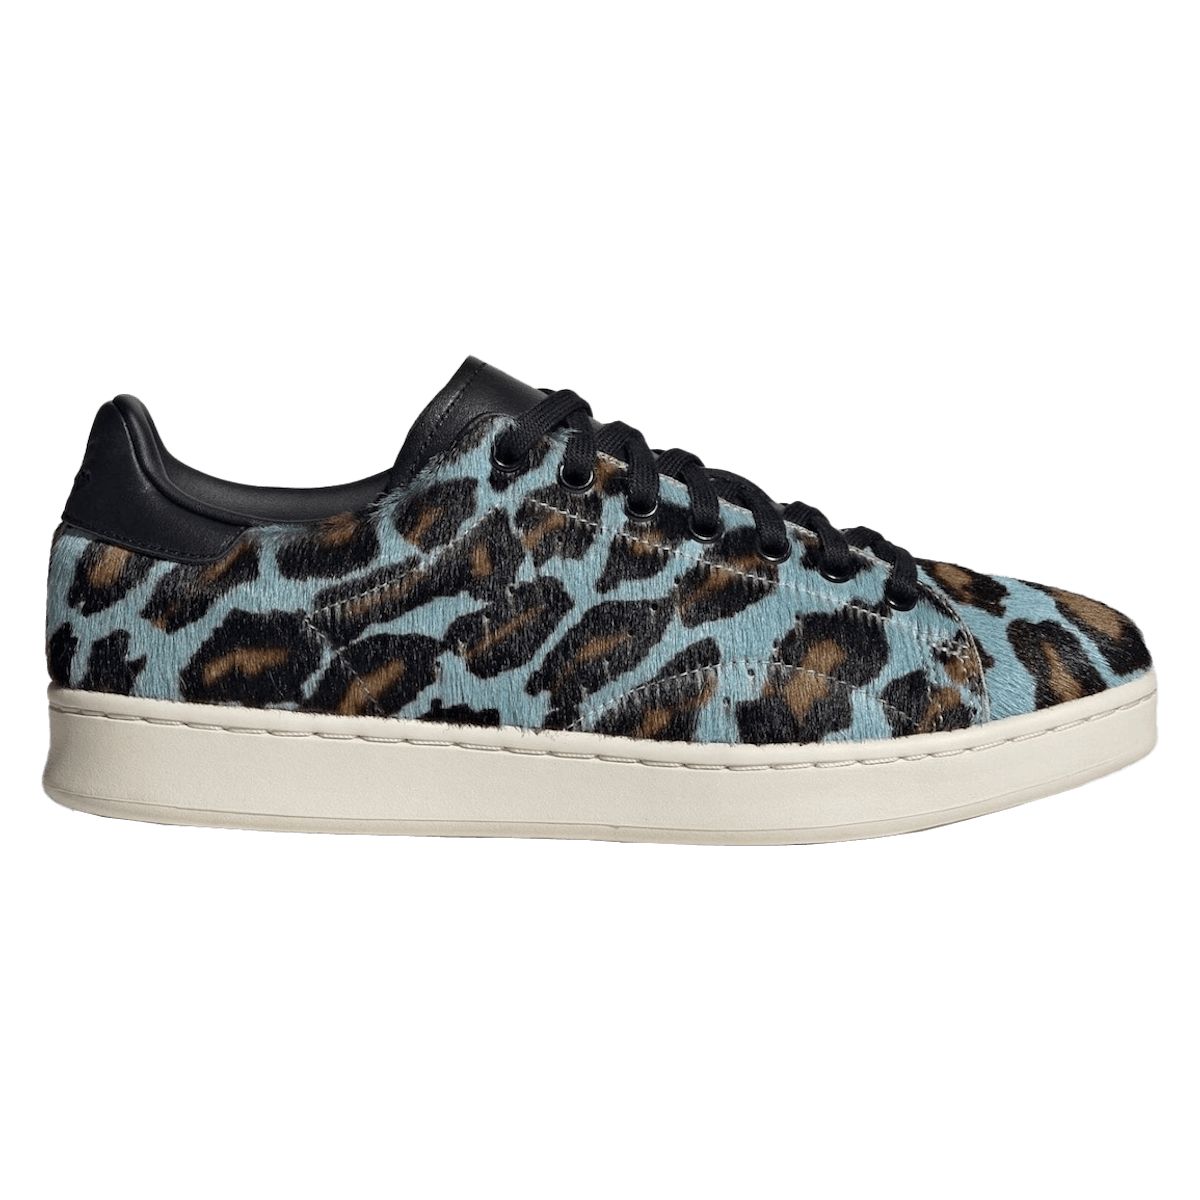 adidas Stan Smith "Leopard"